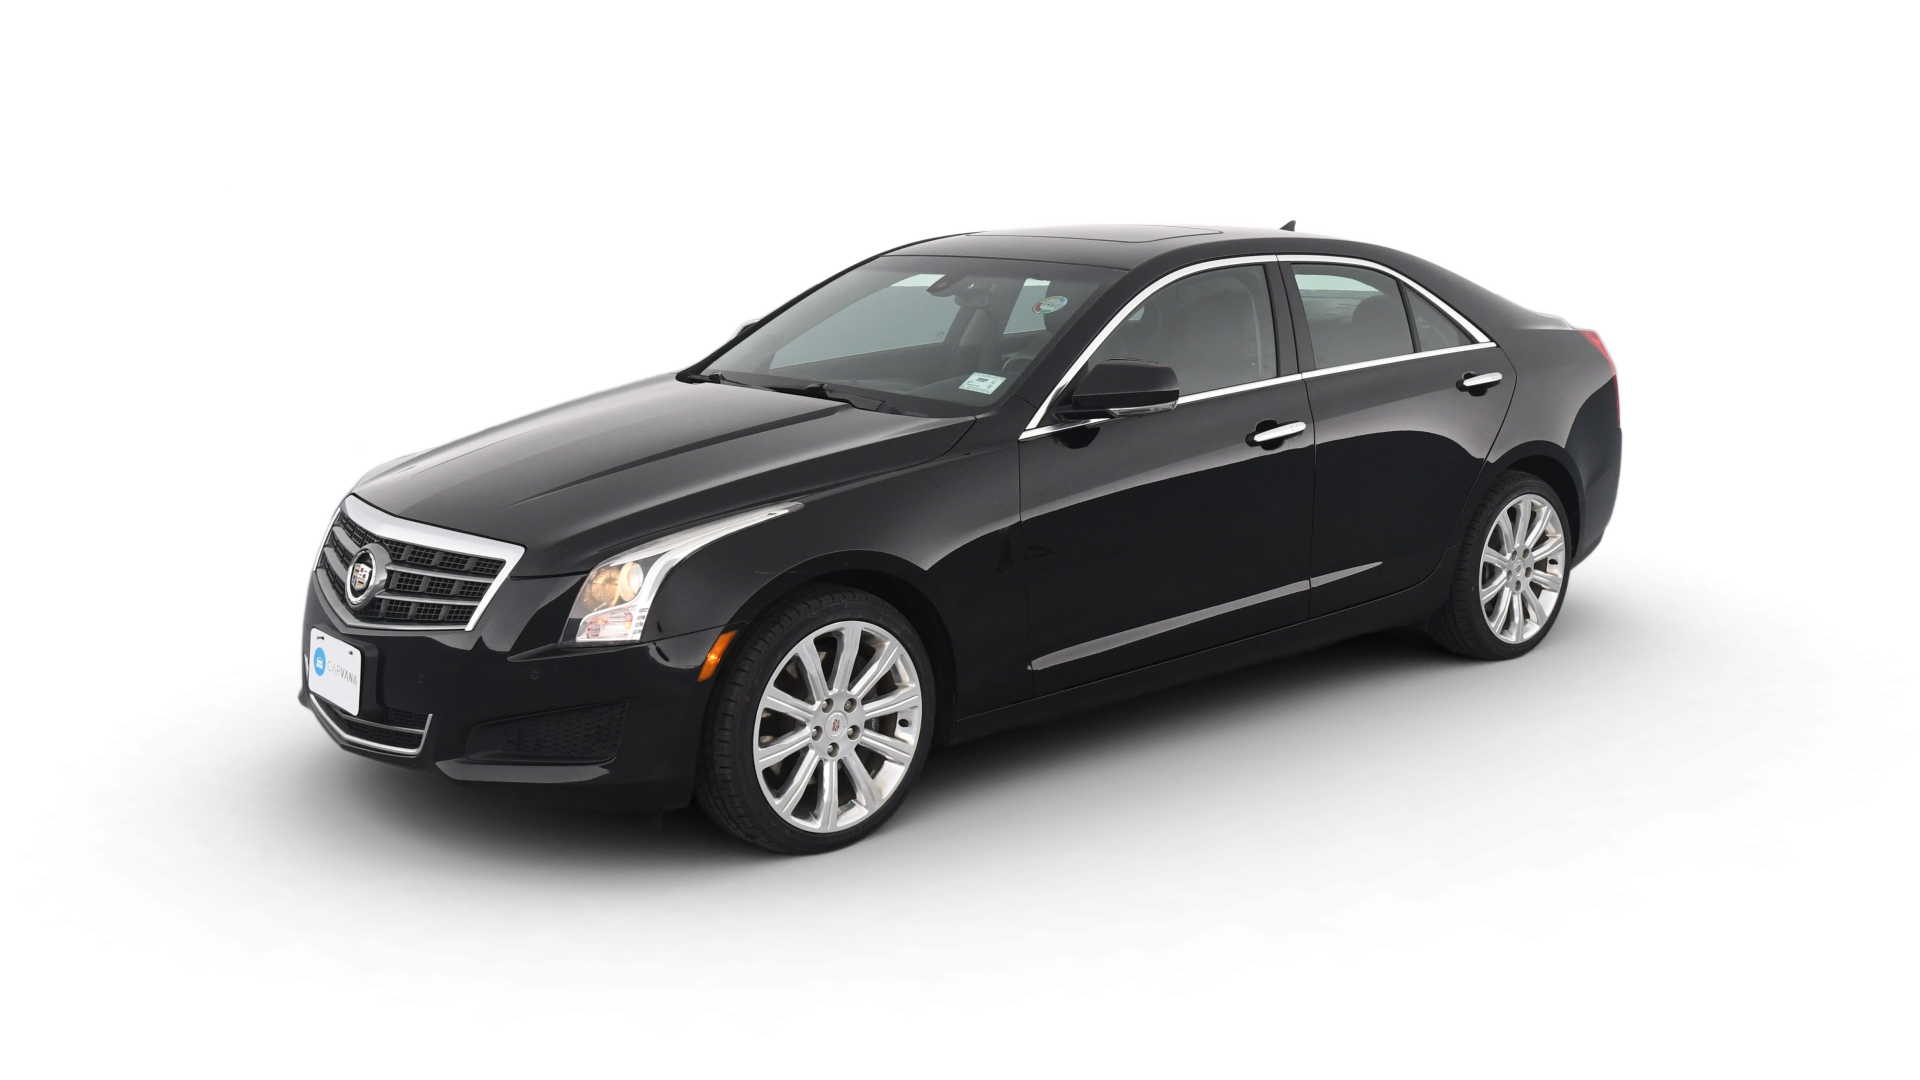 Cadillac ATS model image.